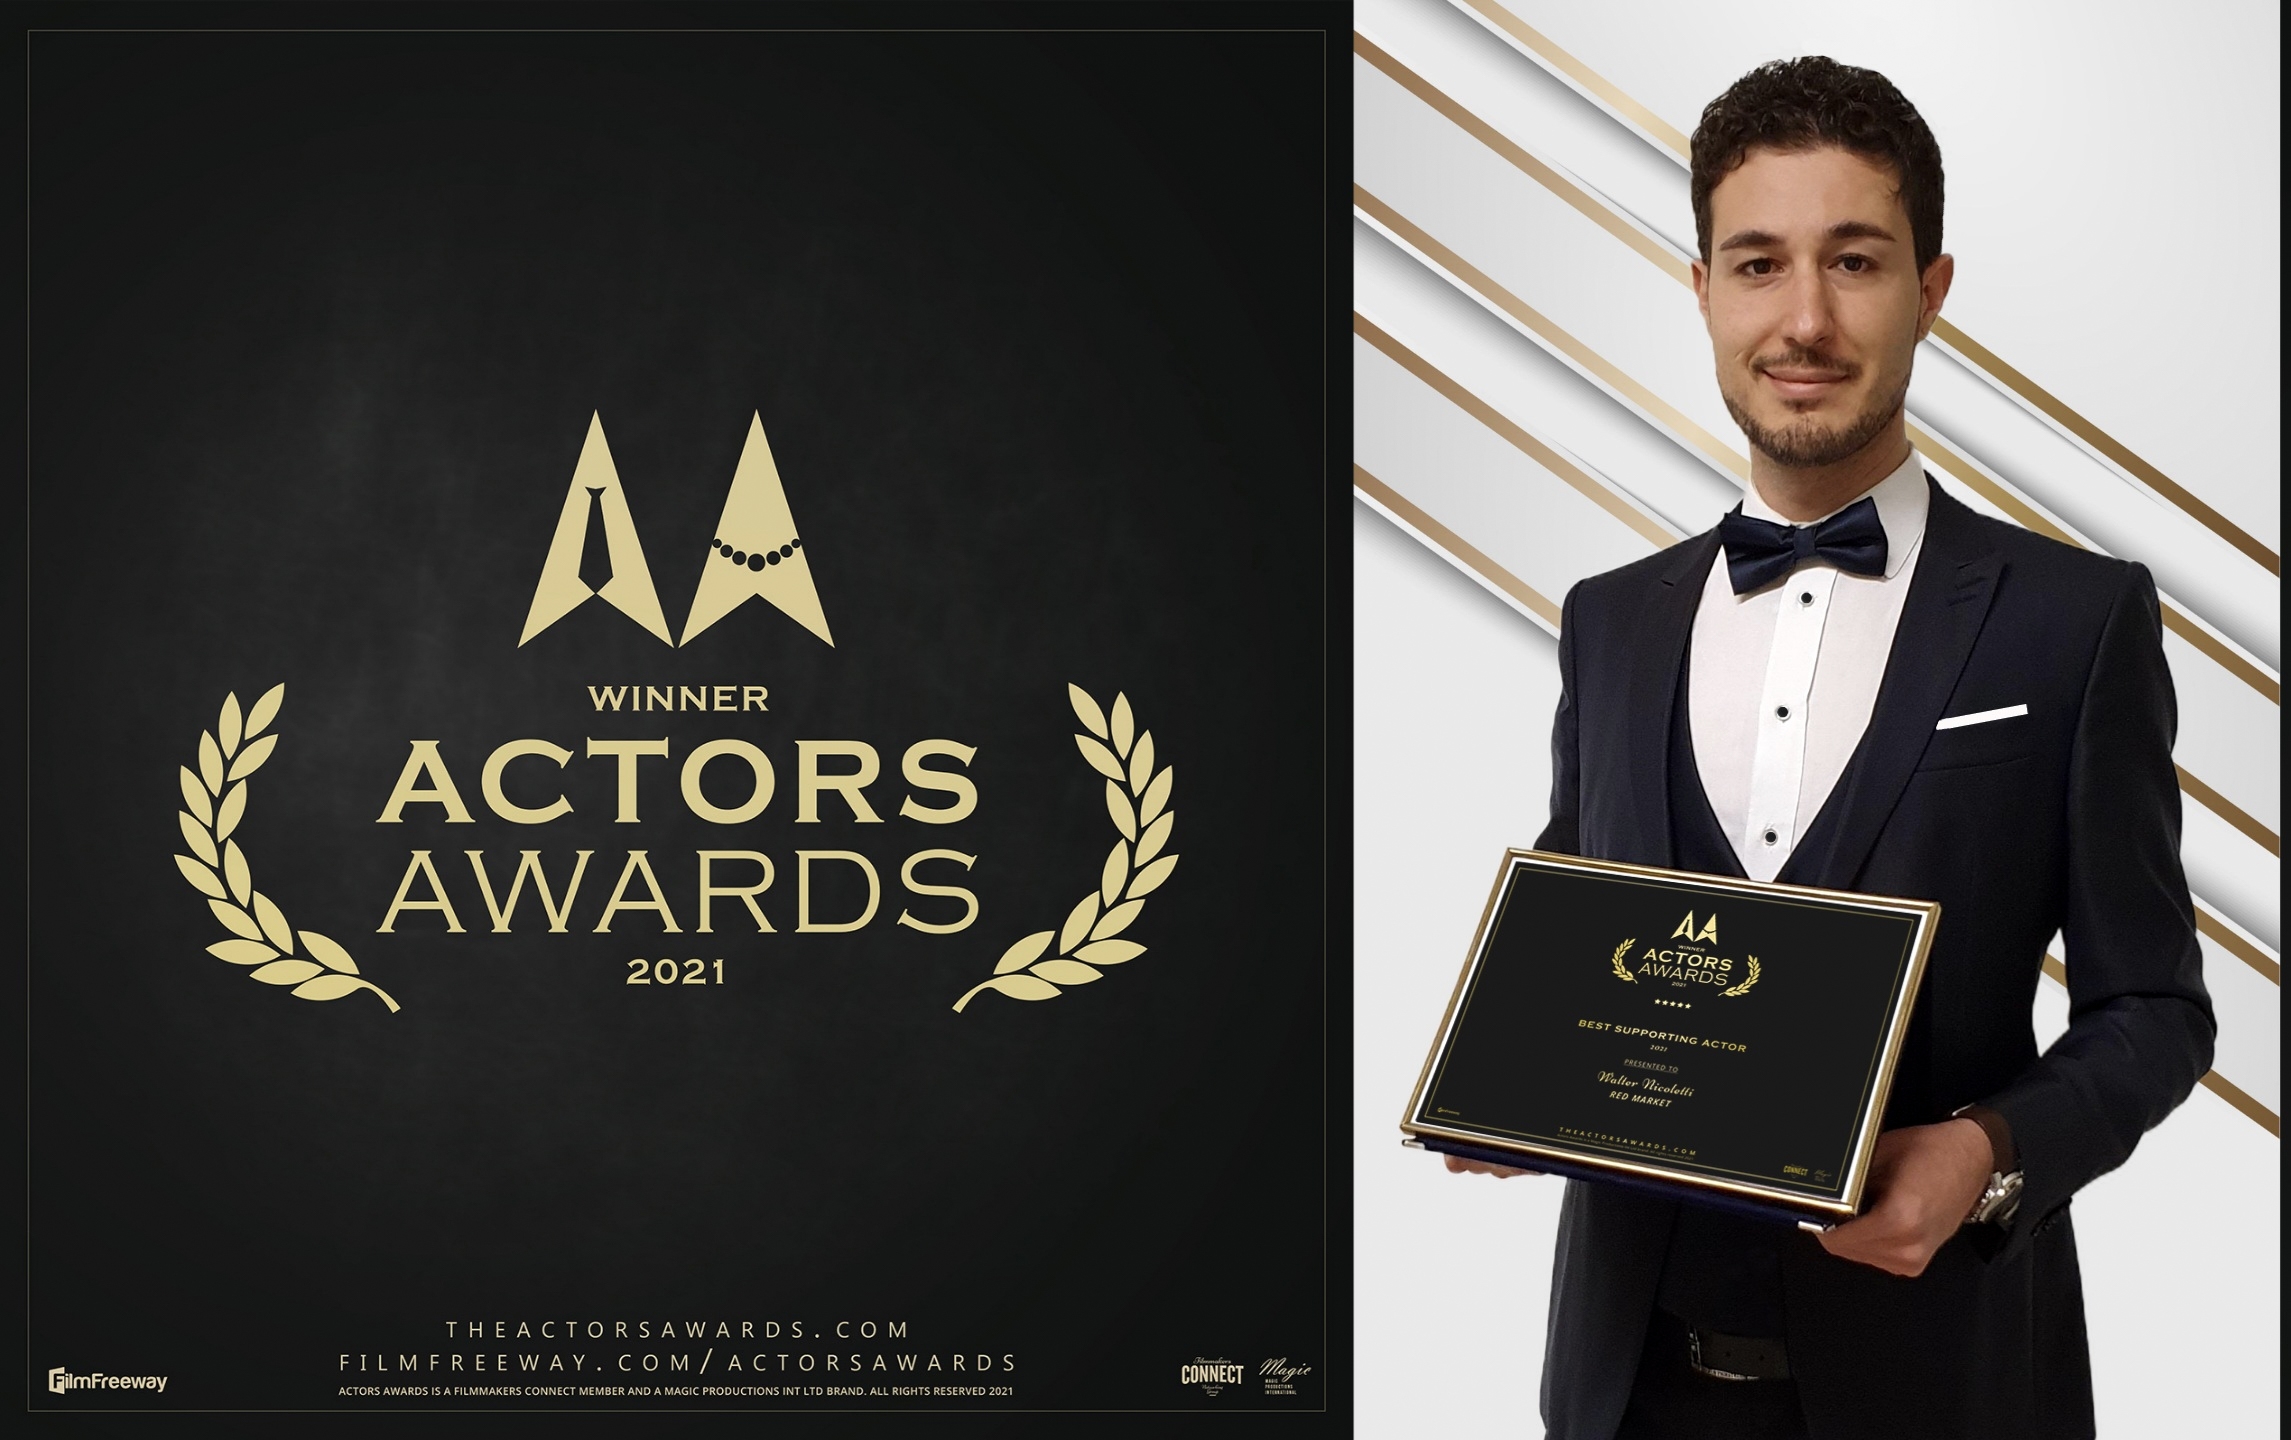 L’attore materano Walter Nicoletti premiato ad Hollywood agli Actors Awards